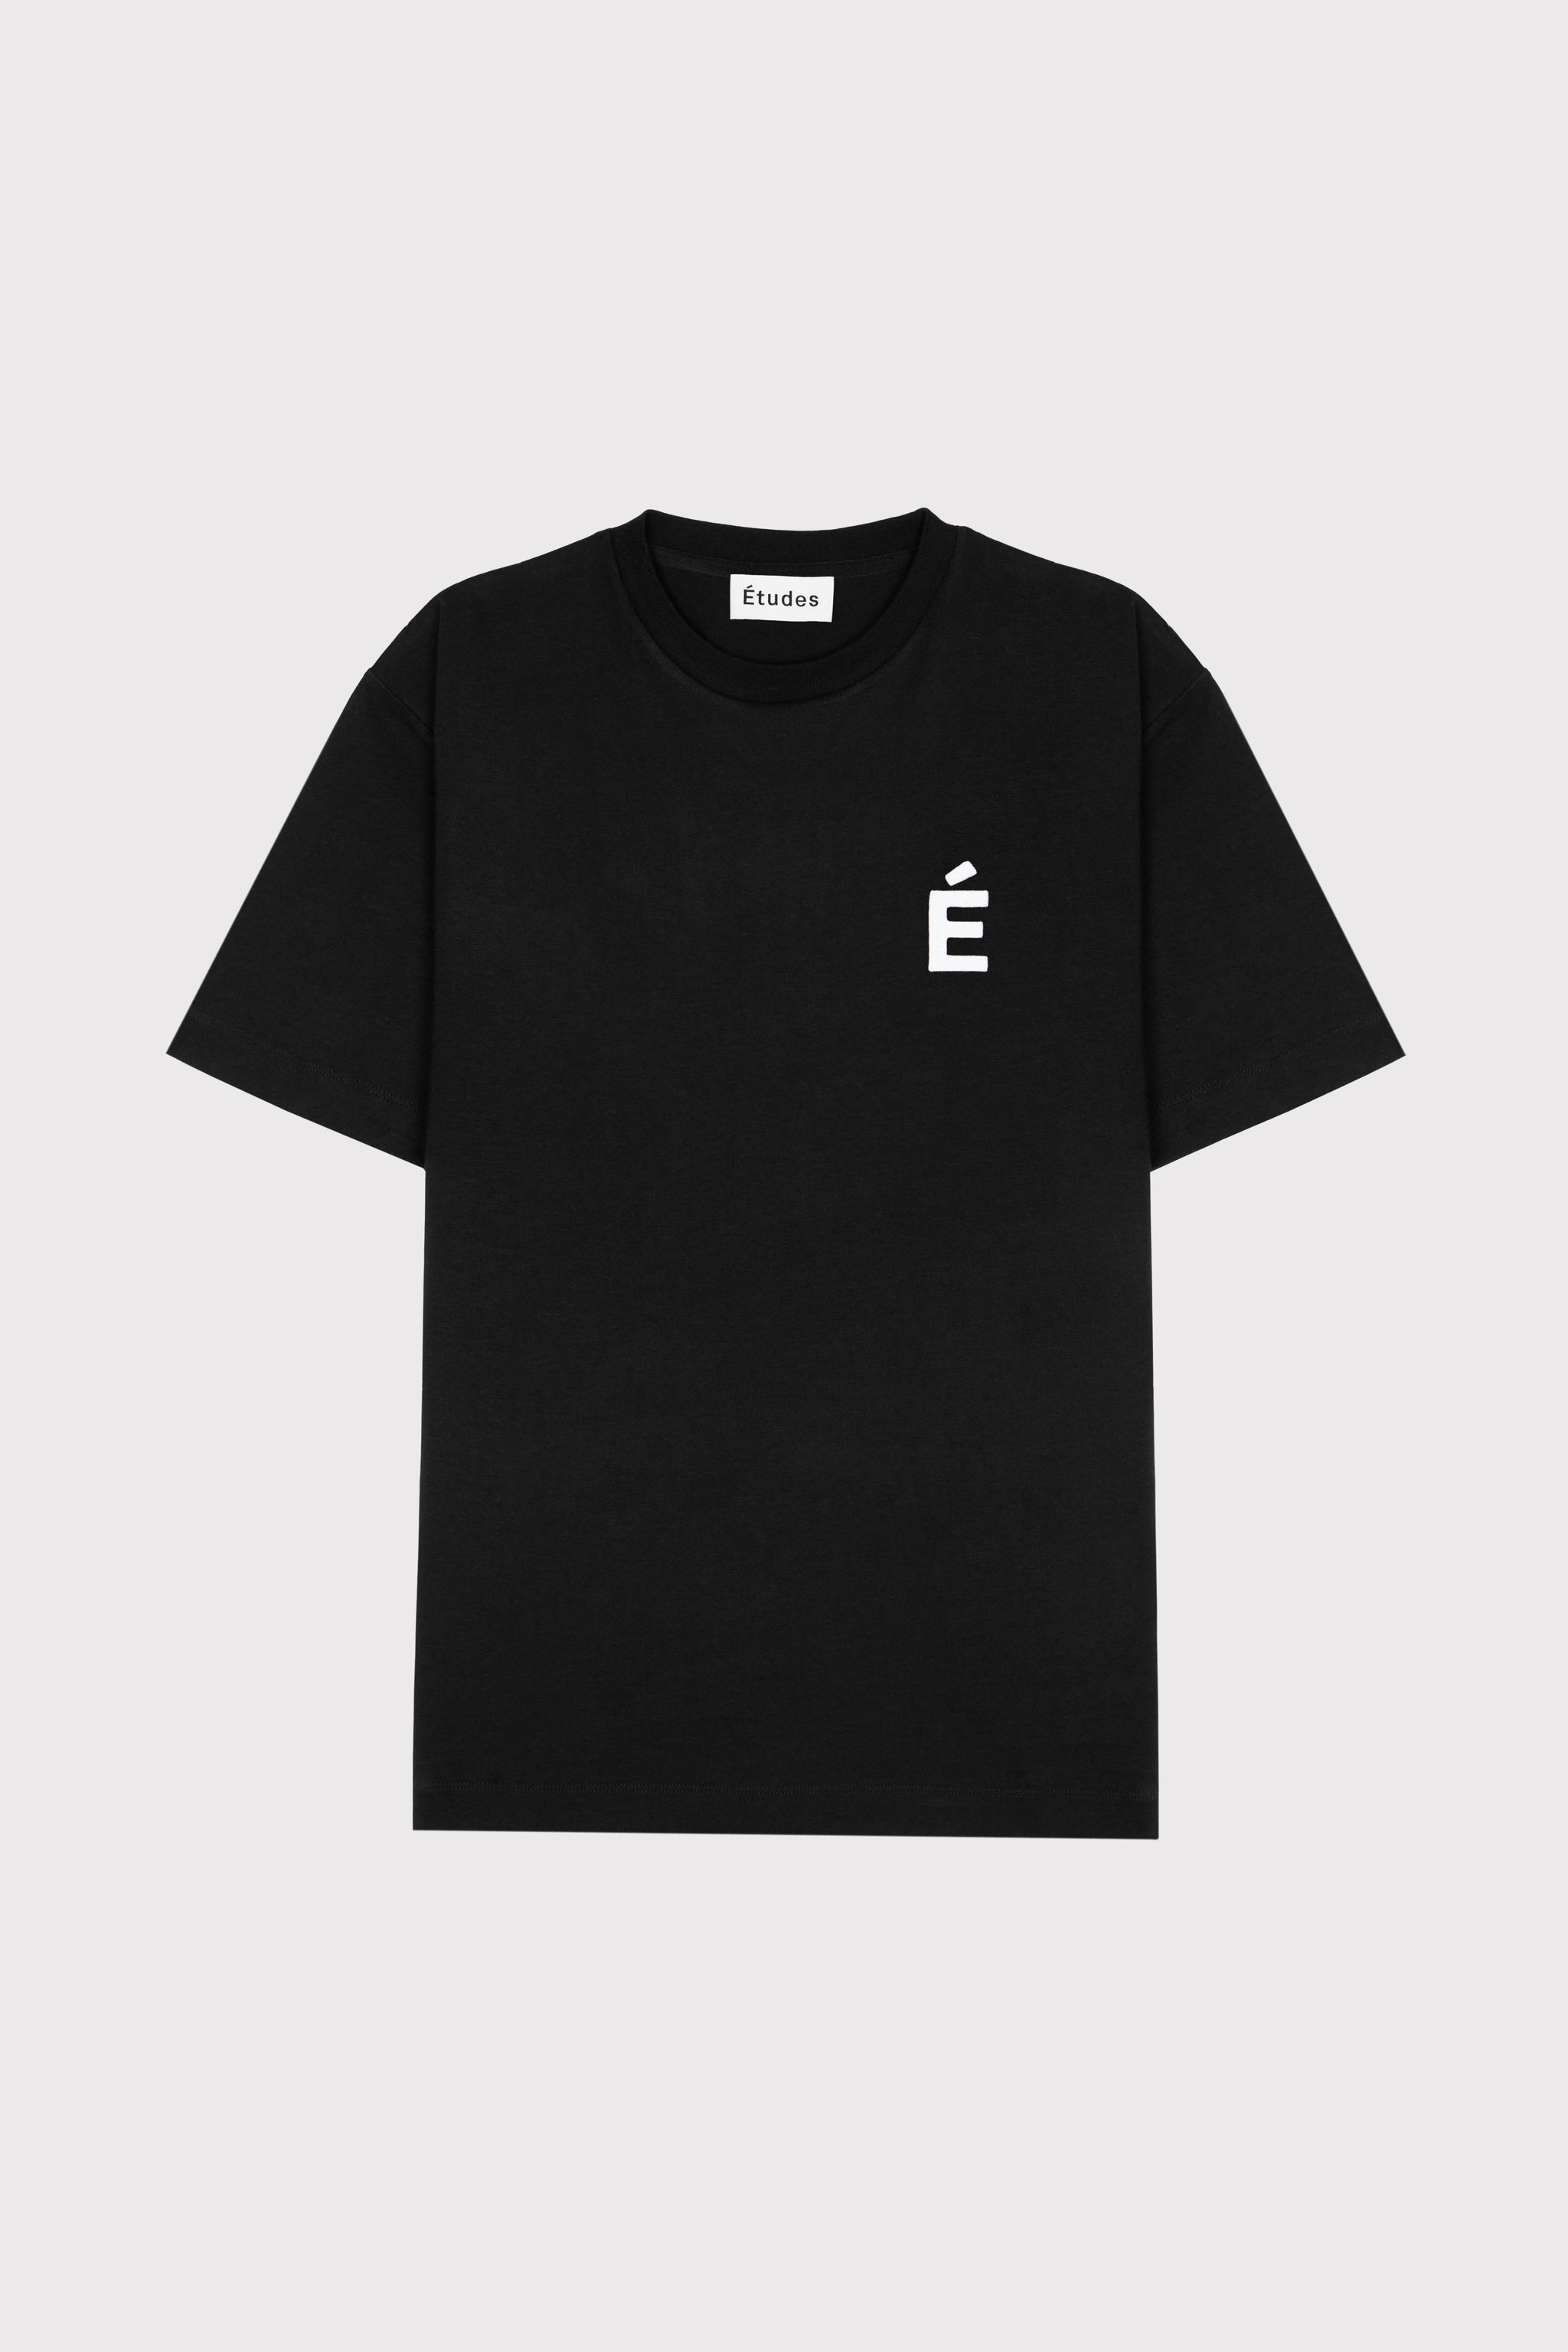 Études WONDER PATCH BLACK T-shirt 2